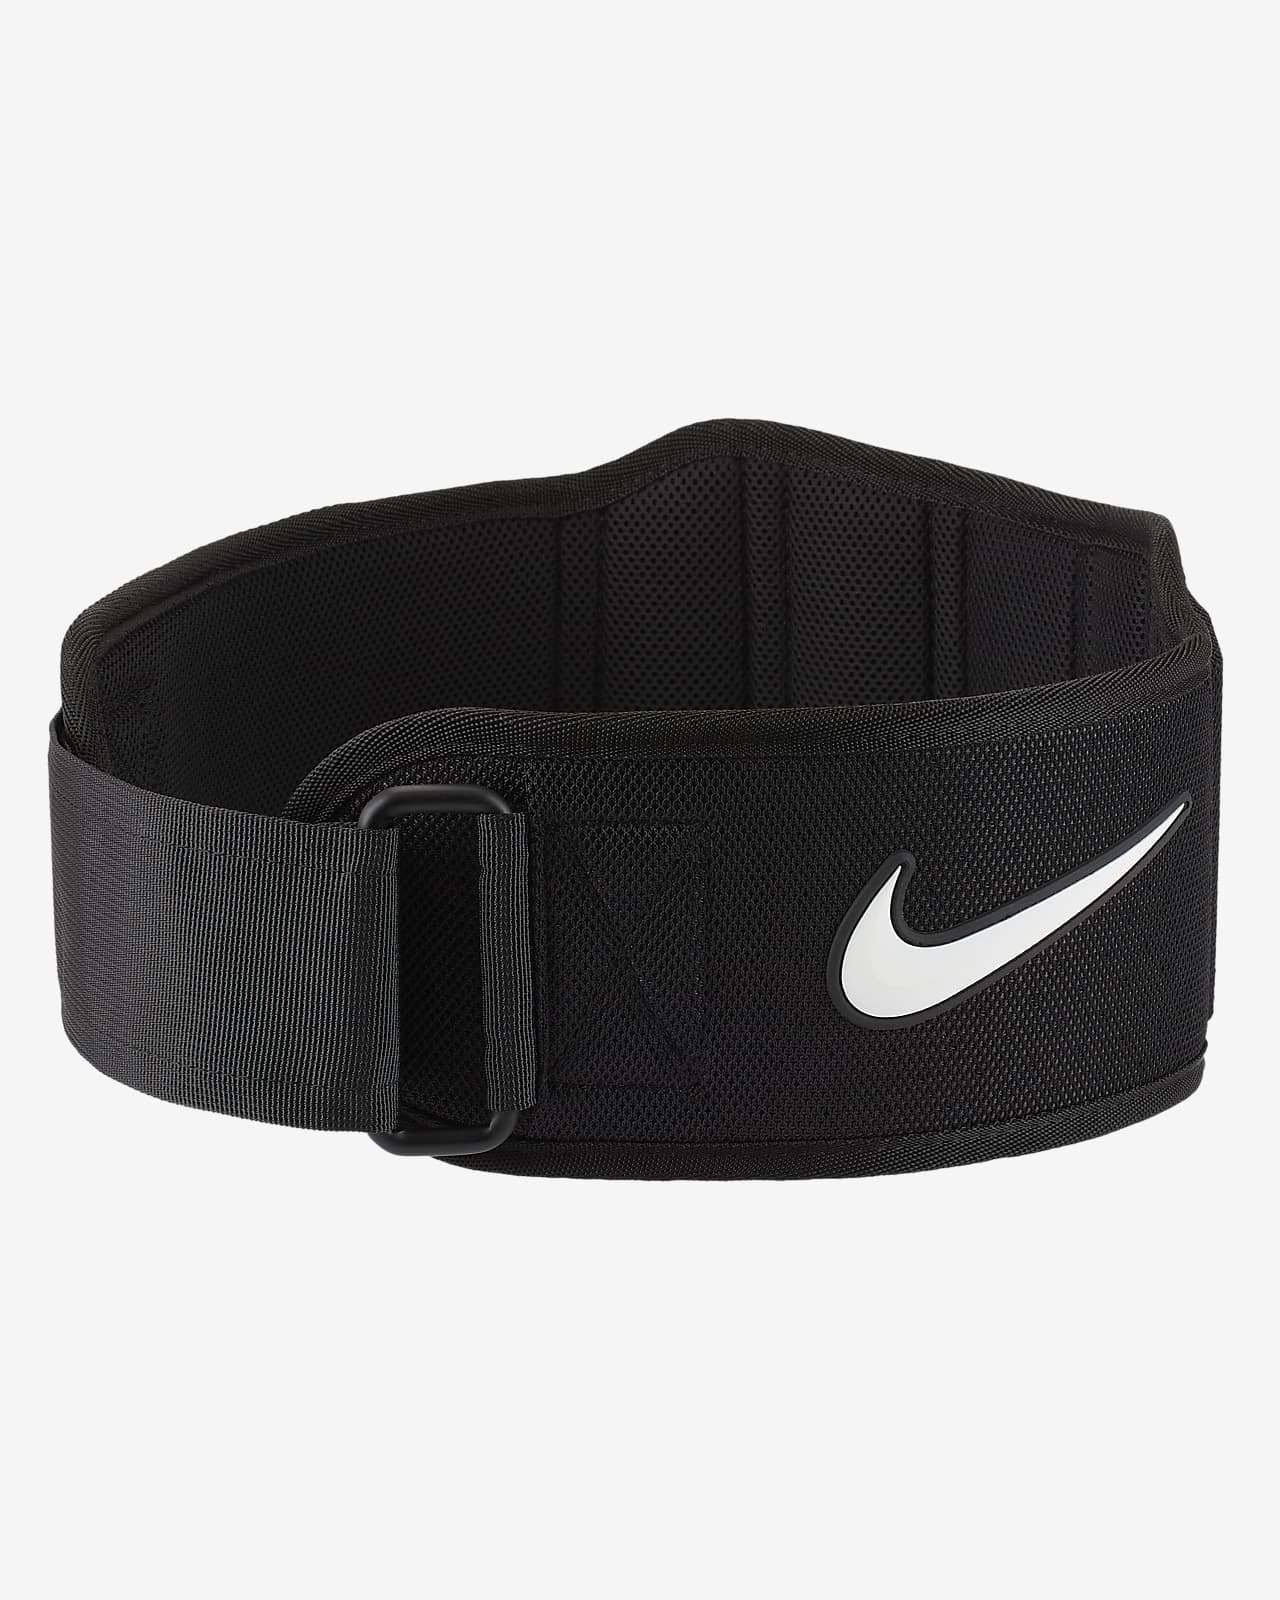 Nike Structured Training Belt 3.0. Nike LU